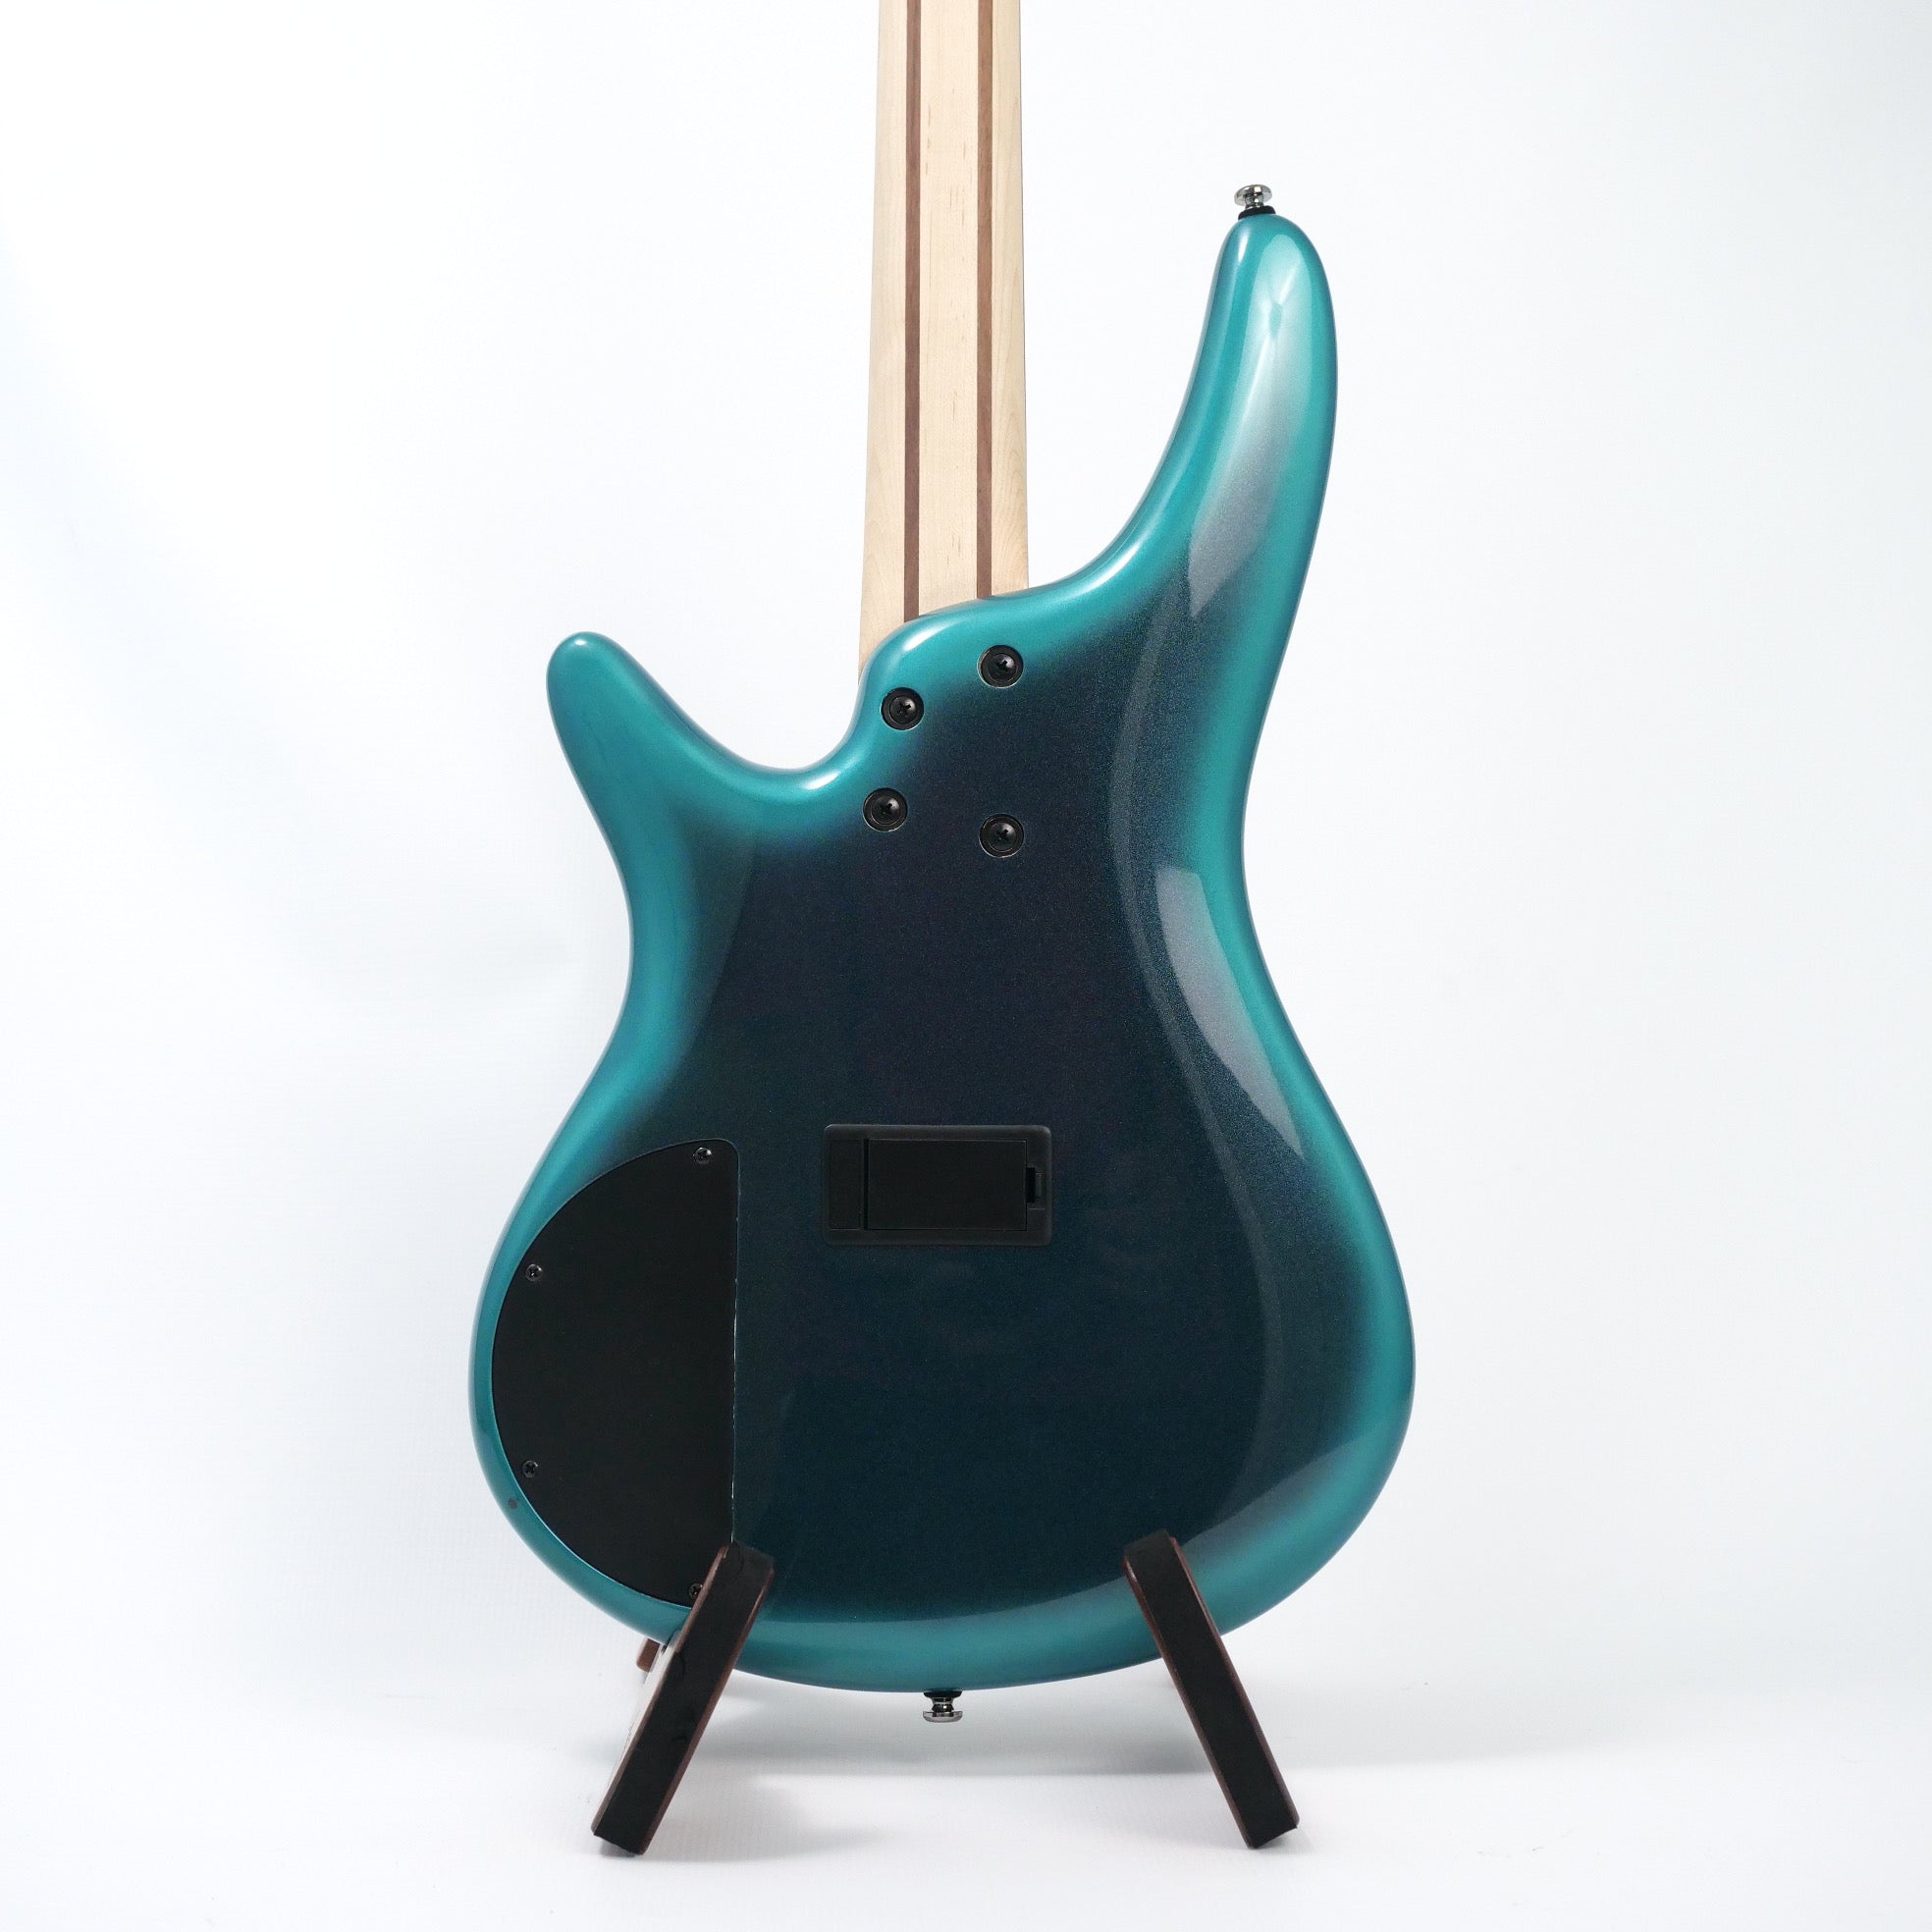 Ibanez SR300ECUB 4-String Electric Bass - Cerulean Blue